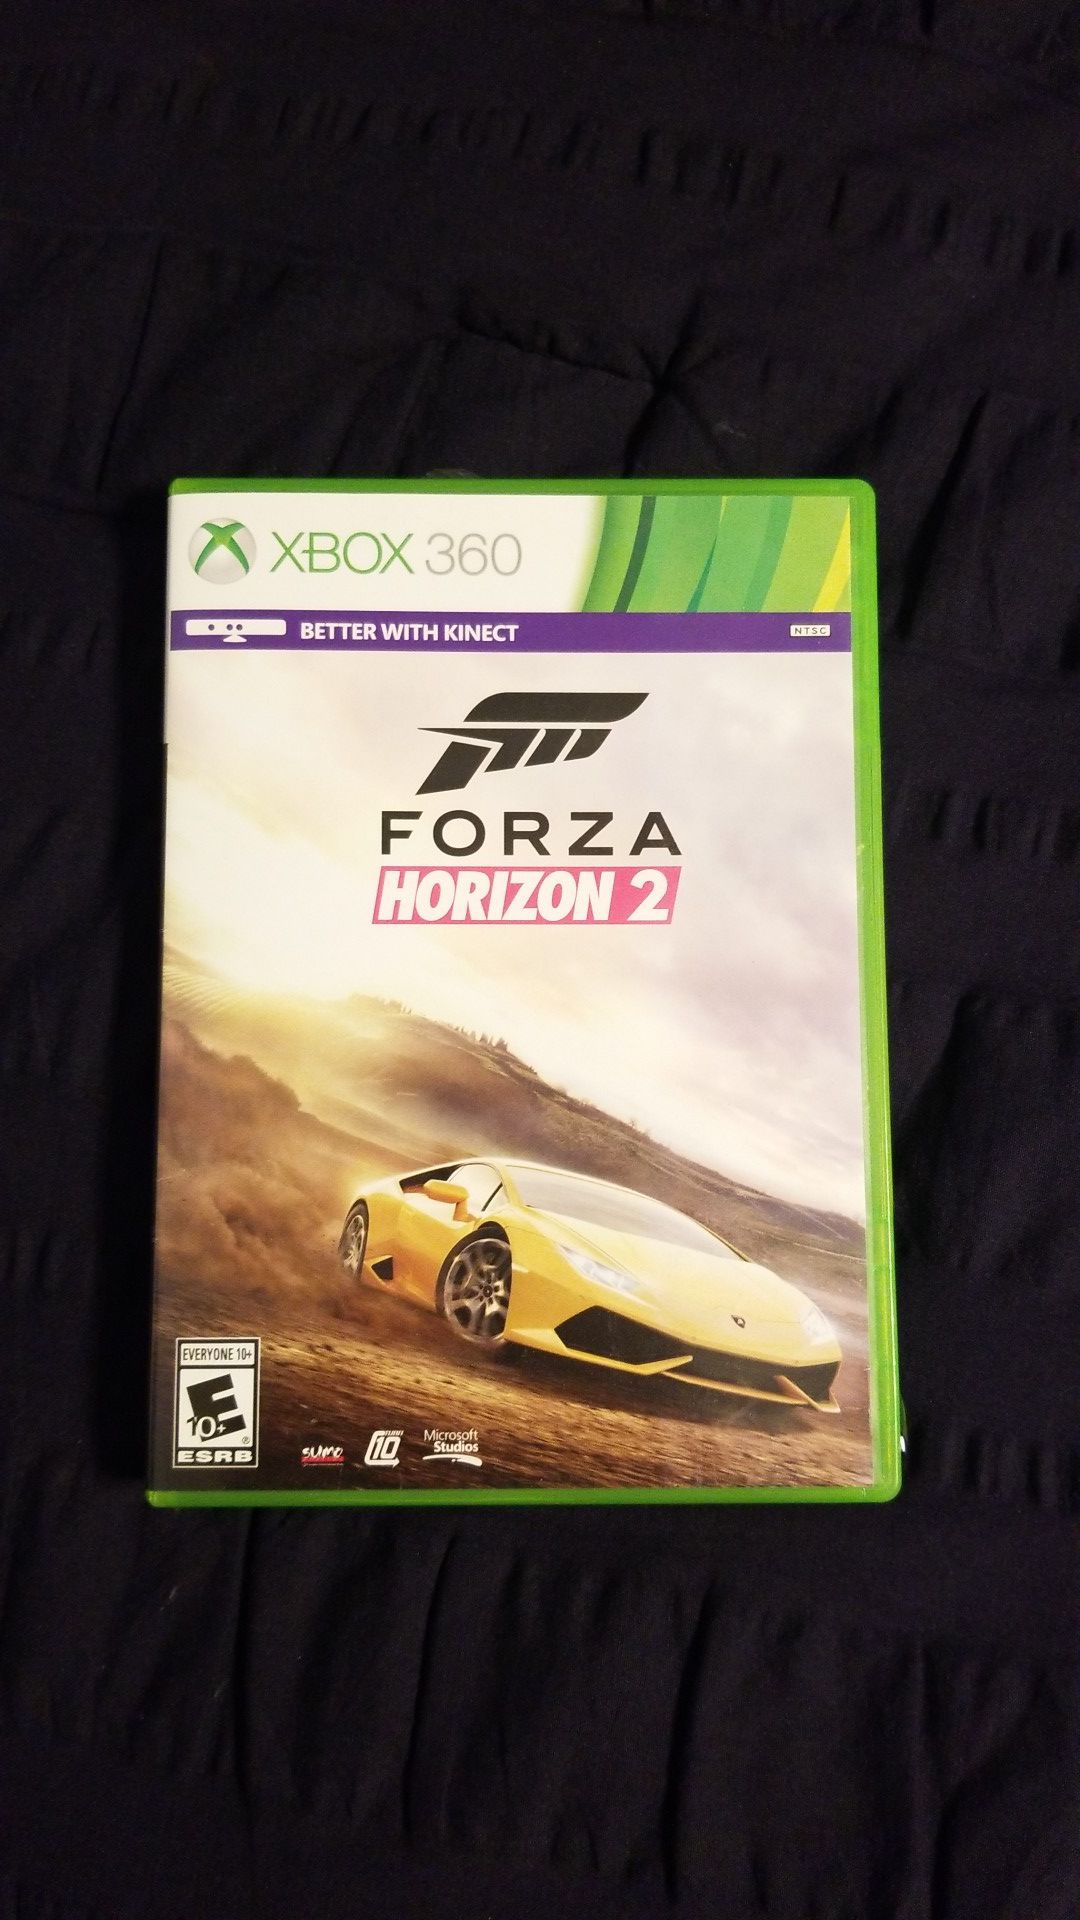 XBOX 360 Forza Horizon 2 game